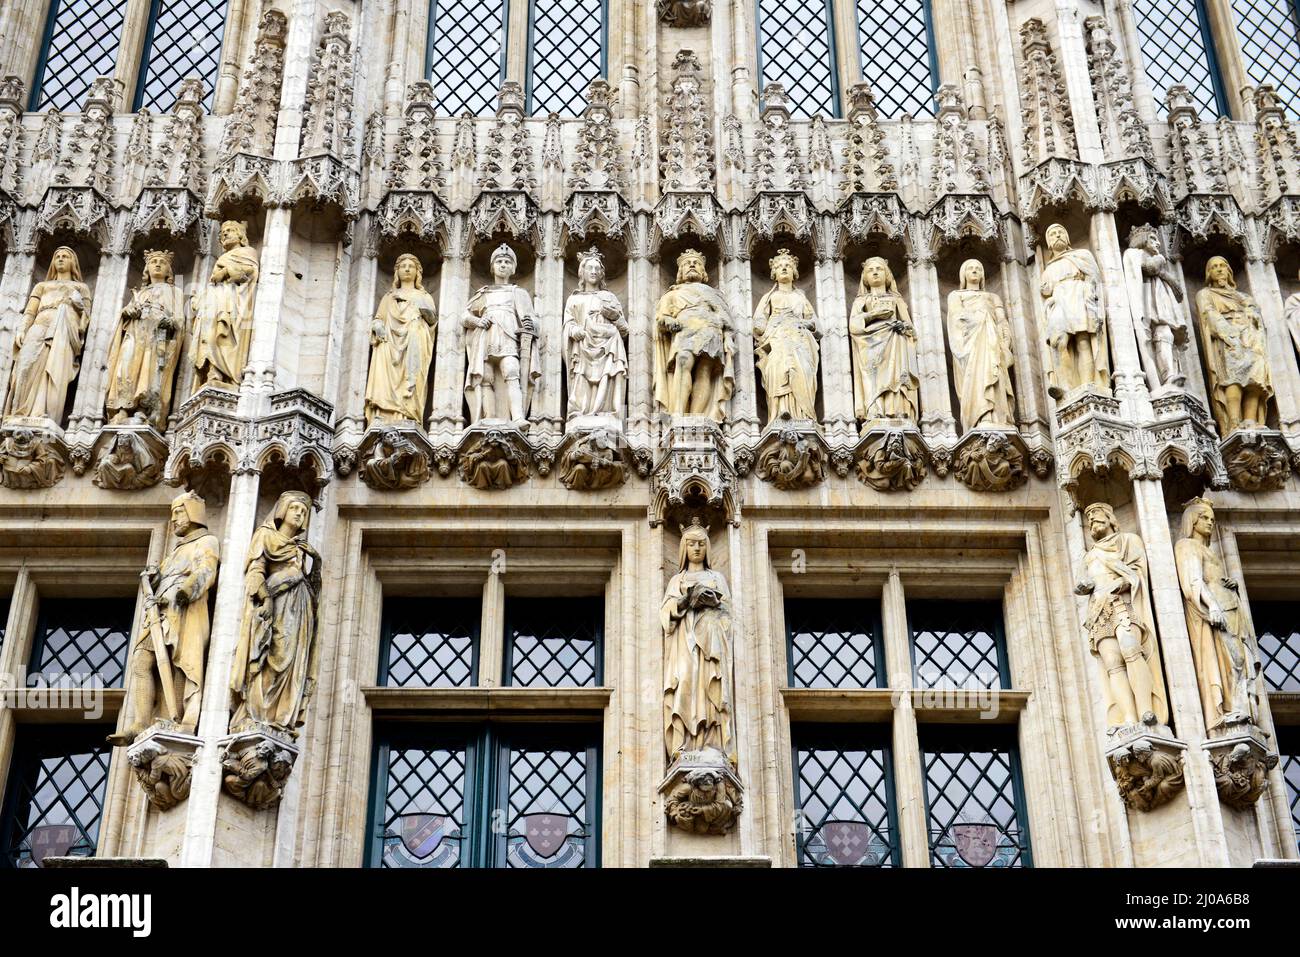 Die façade des Rathauses der Stadt Brüssel wurde im gotischen Baustil erbaut und mit Statuen von Adligen und Heiligen geschmückt. Stockfoto